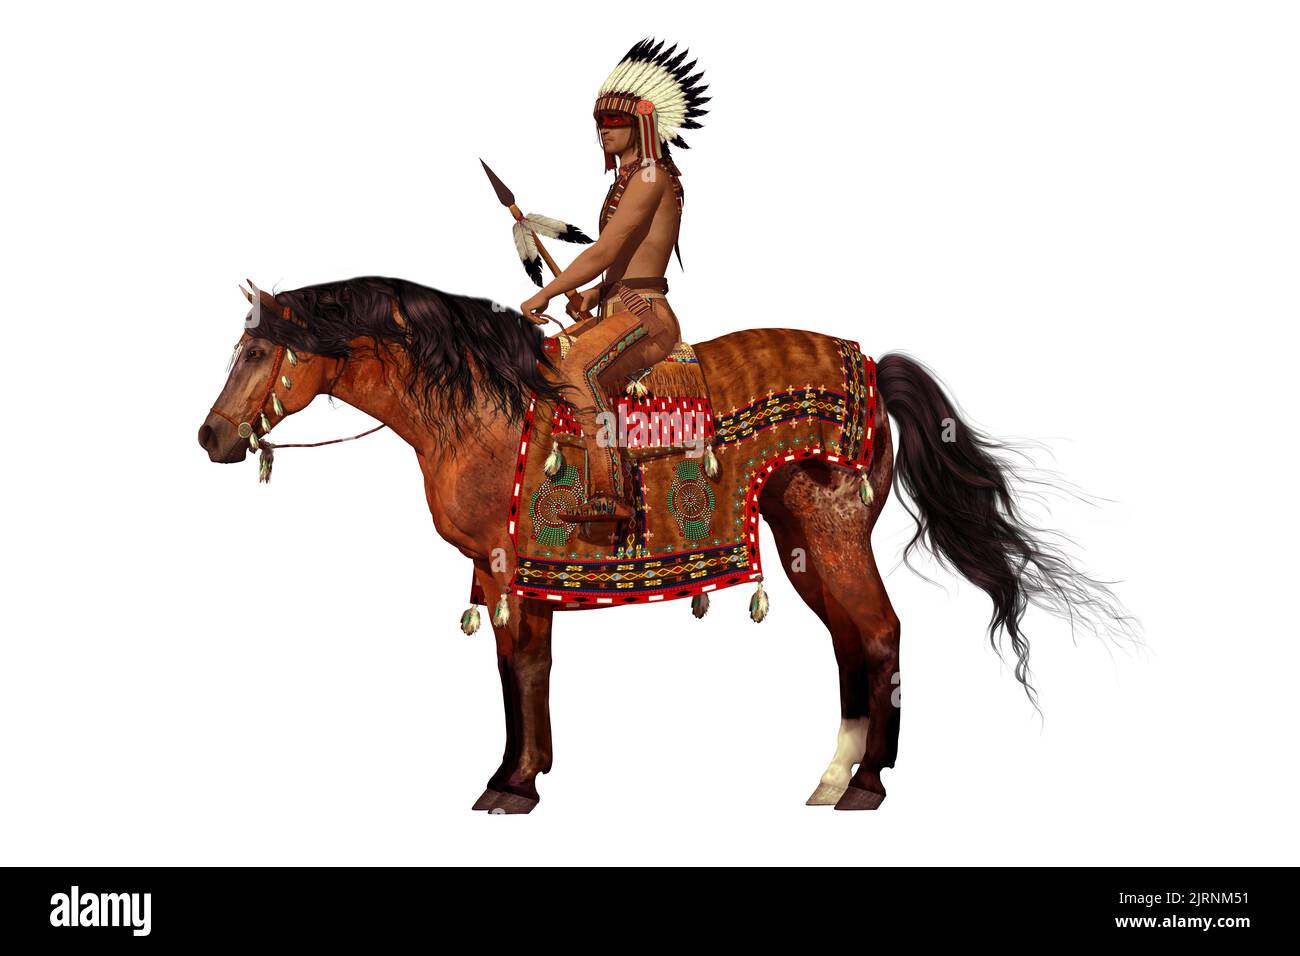 Orgulloso Águila en Blanco - Un indio americano monta su caballo Appaloosa con pintura de guerra en su cara y una lanza en su mano. Foto de stock